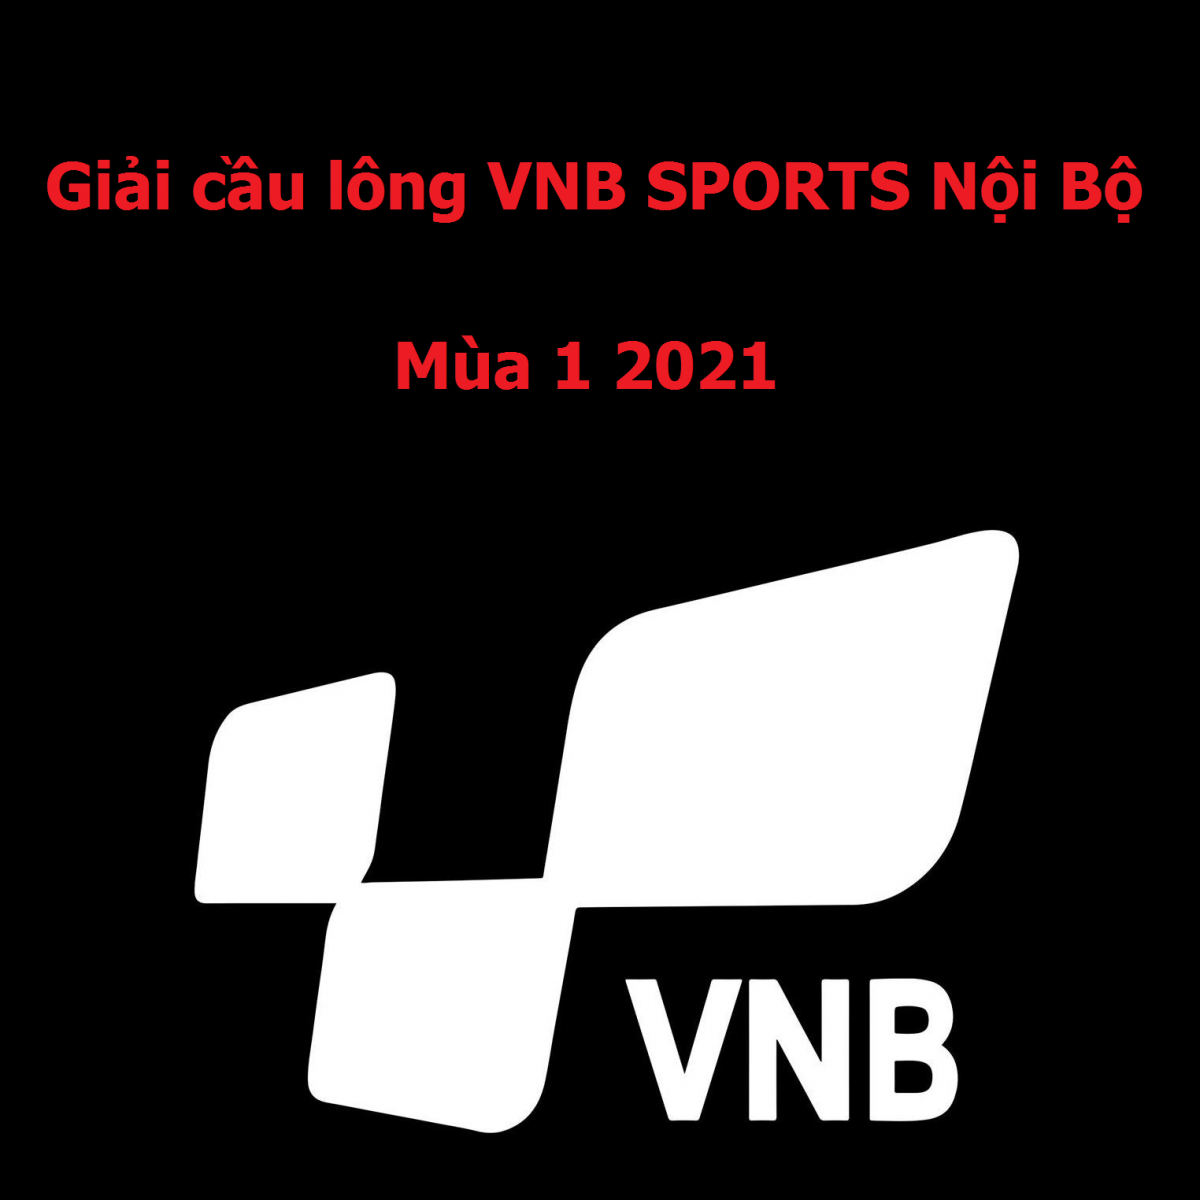 Tổ chức trực tiếp giải cầu lông VNB Sports Nội Bộ mùa 1 2021